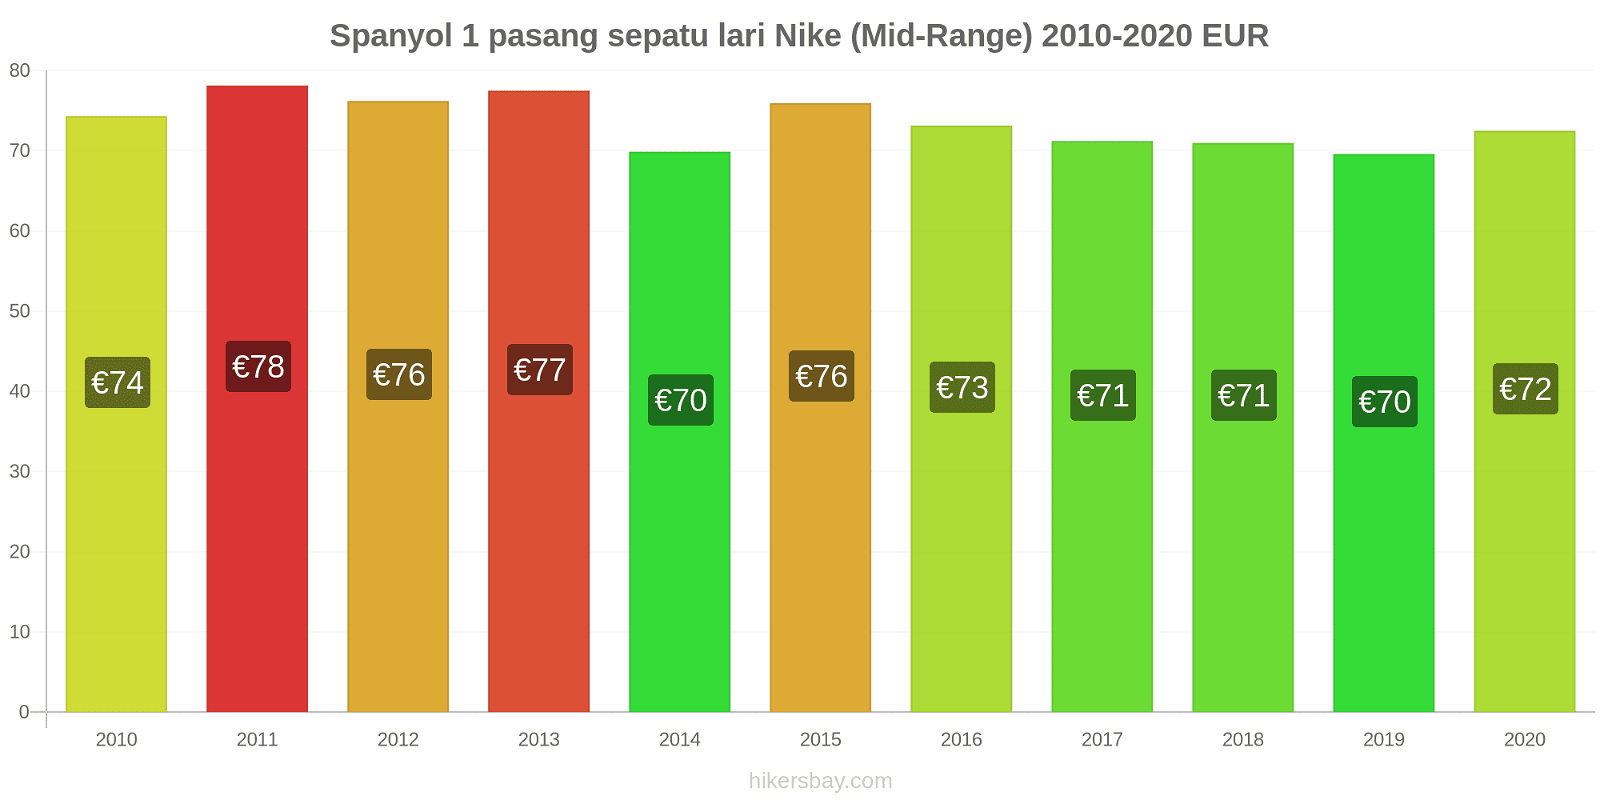 Spanyol perubahan harga 1 pasang sepatu lari Nike (Mid-Range) hikersbay.com